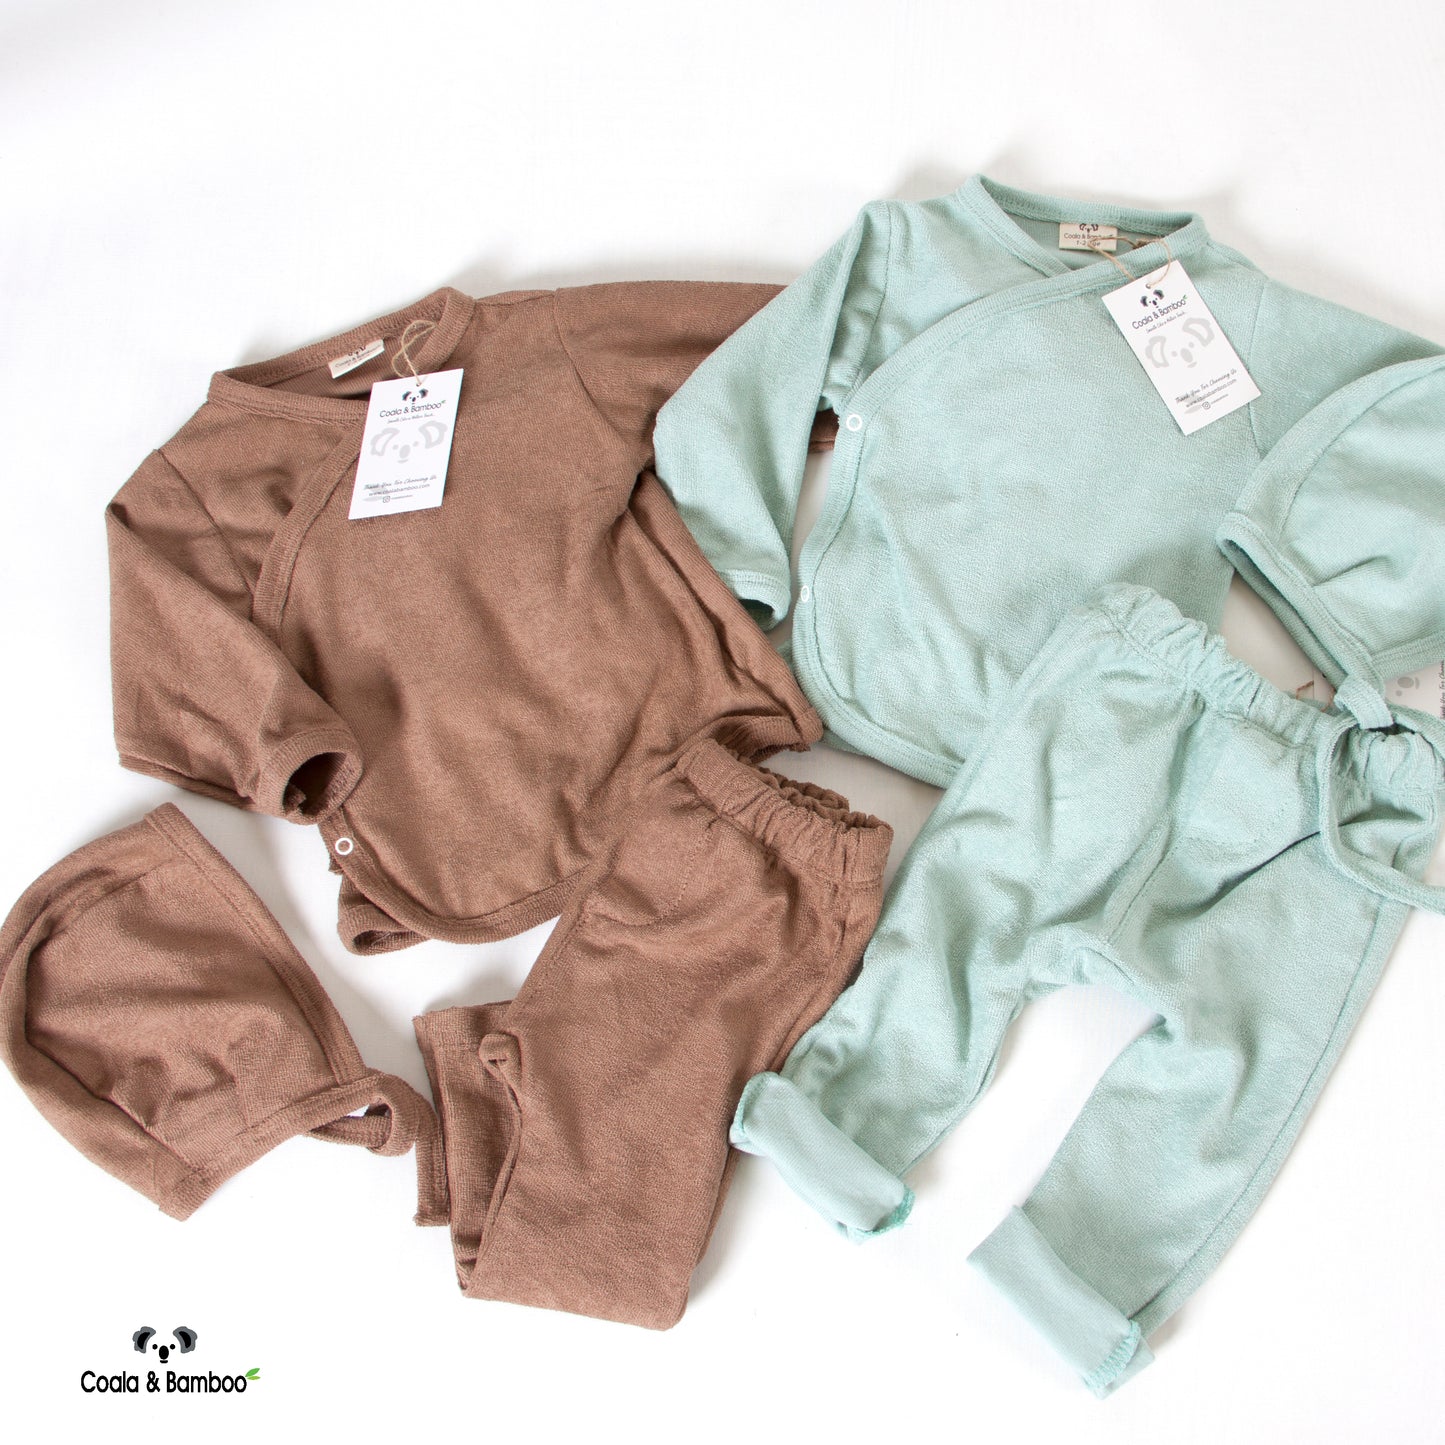 Unisex Thin Towel Bodysuit Set of 3 Pcs Aged 3-12 Months- colored Mint